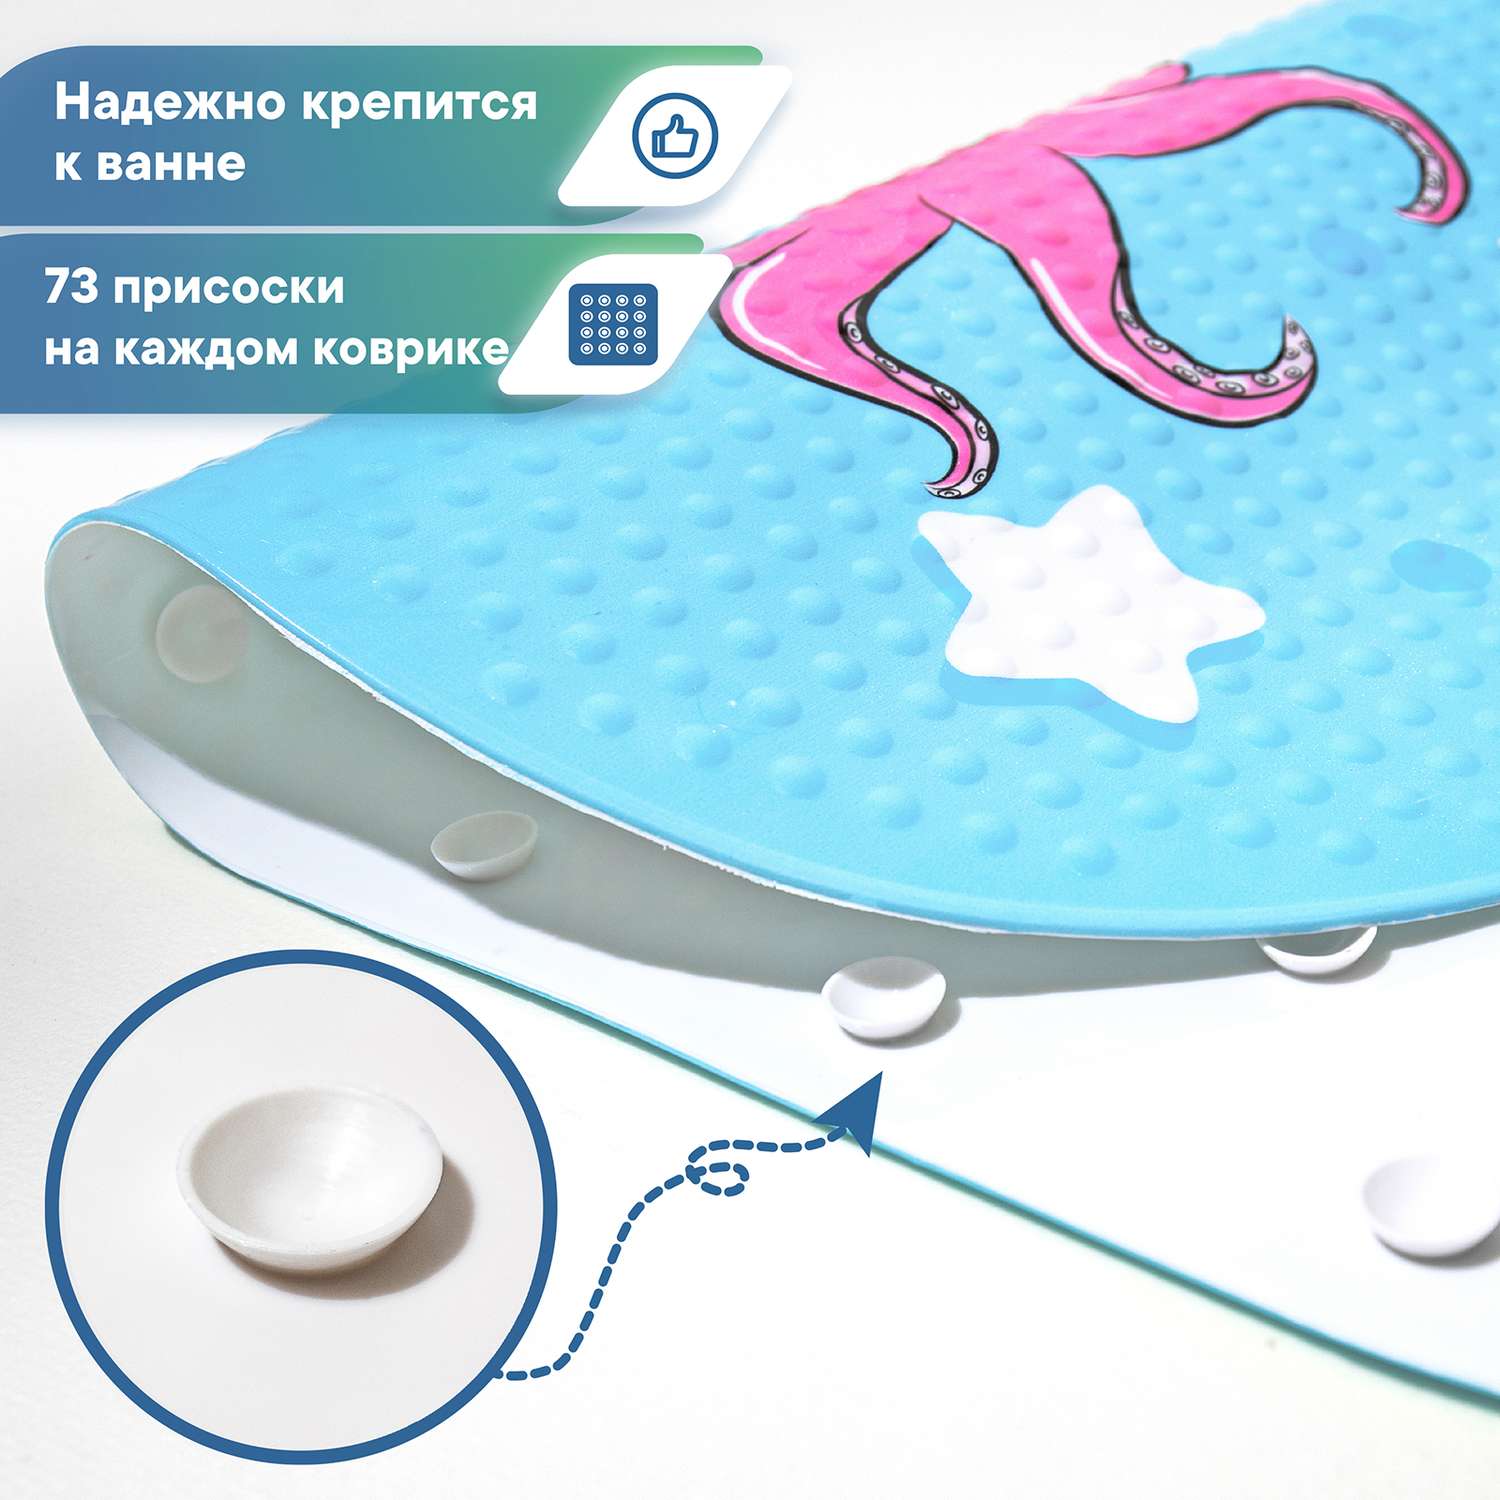 Коврик для ванной детский VILINA противоскользящий c присосками 38х69 см. массажный Осминожка - фото 2